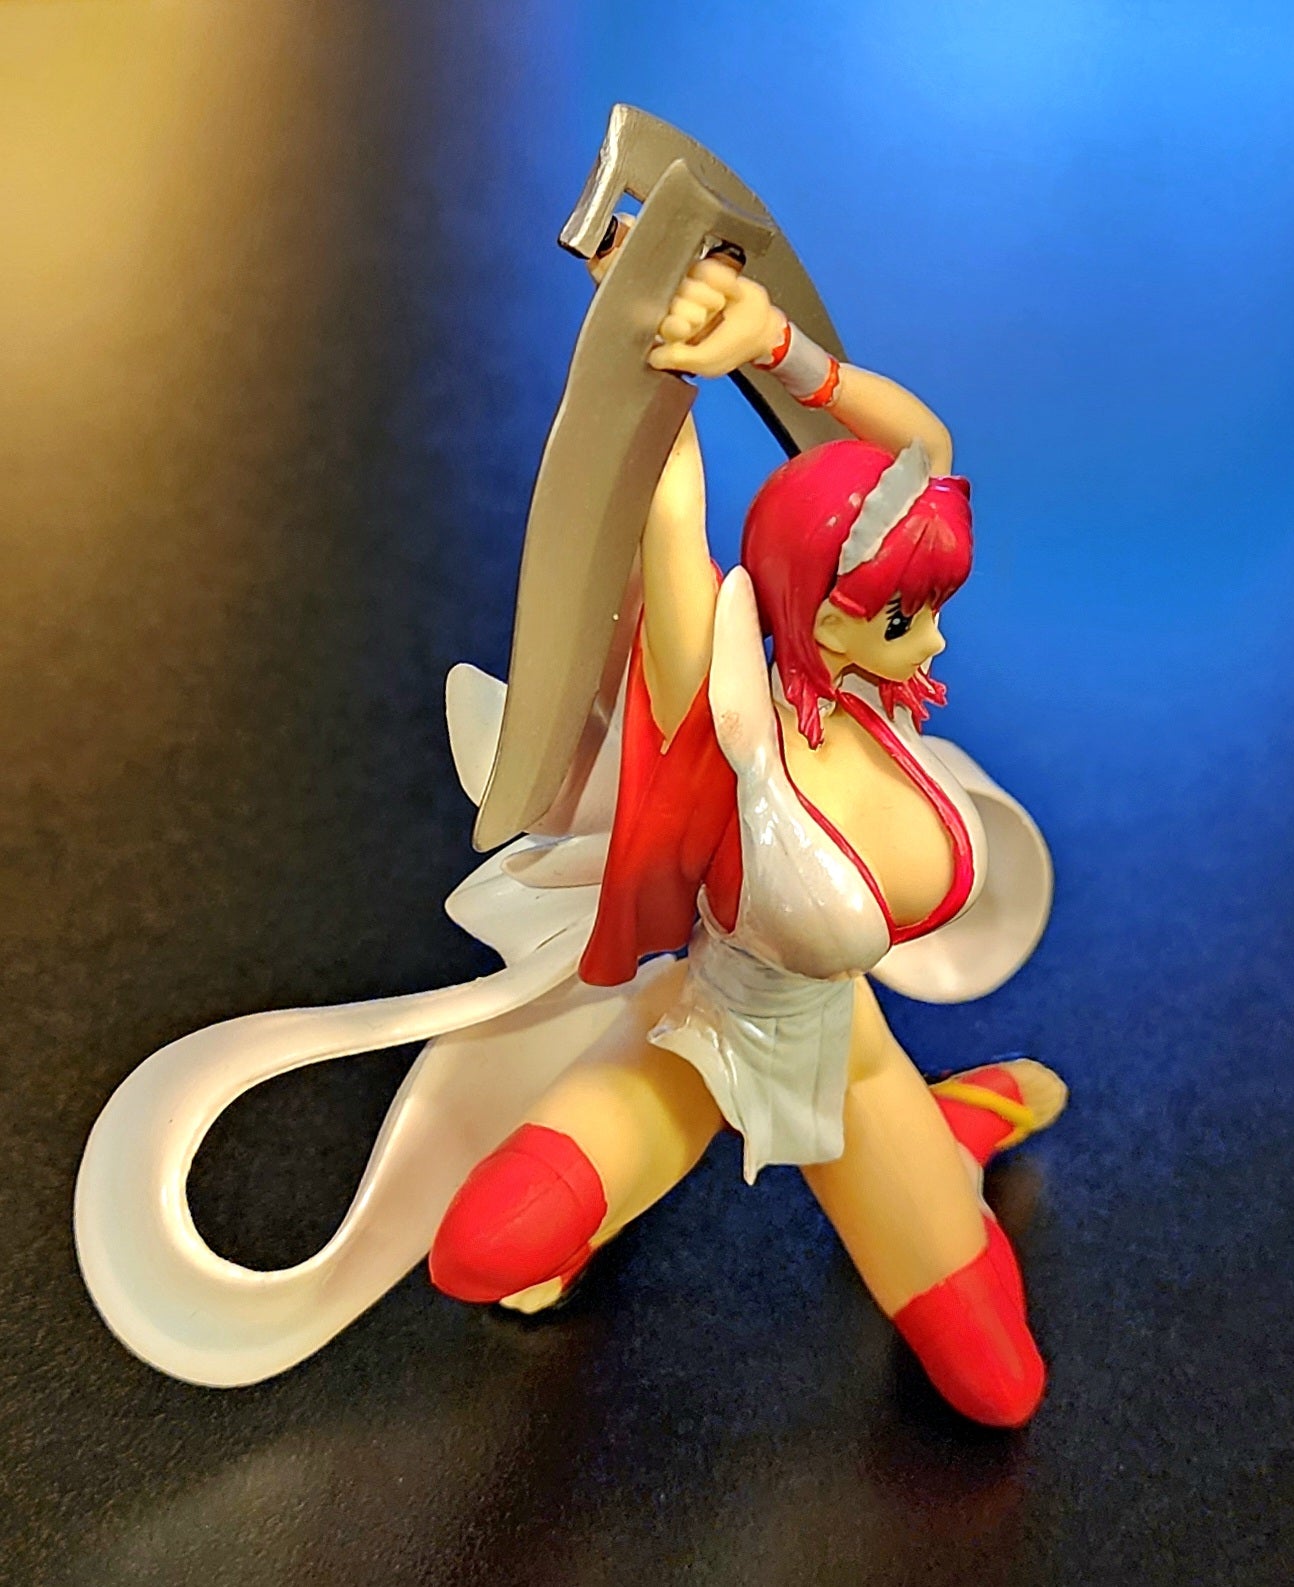 Iroha Samurai Shodown / Samurai Spirits SNK Figure (Red Version)